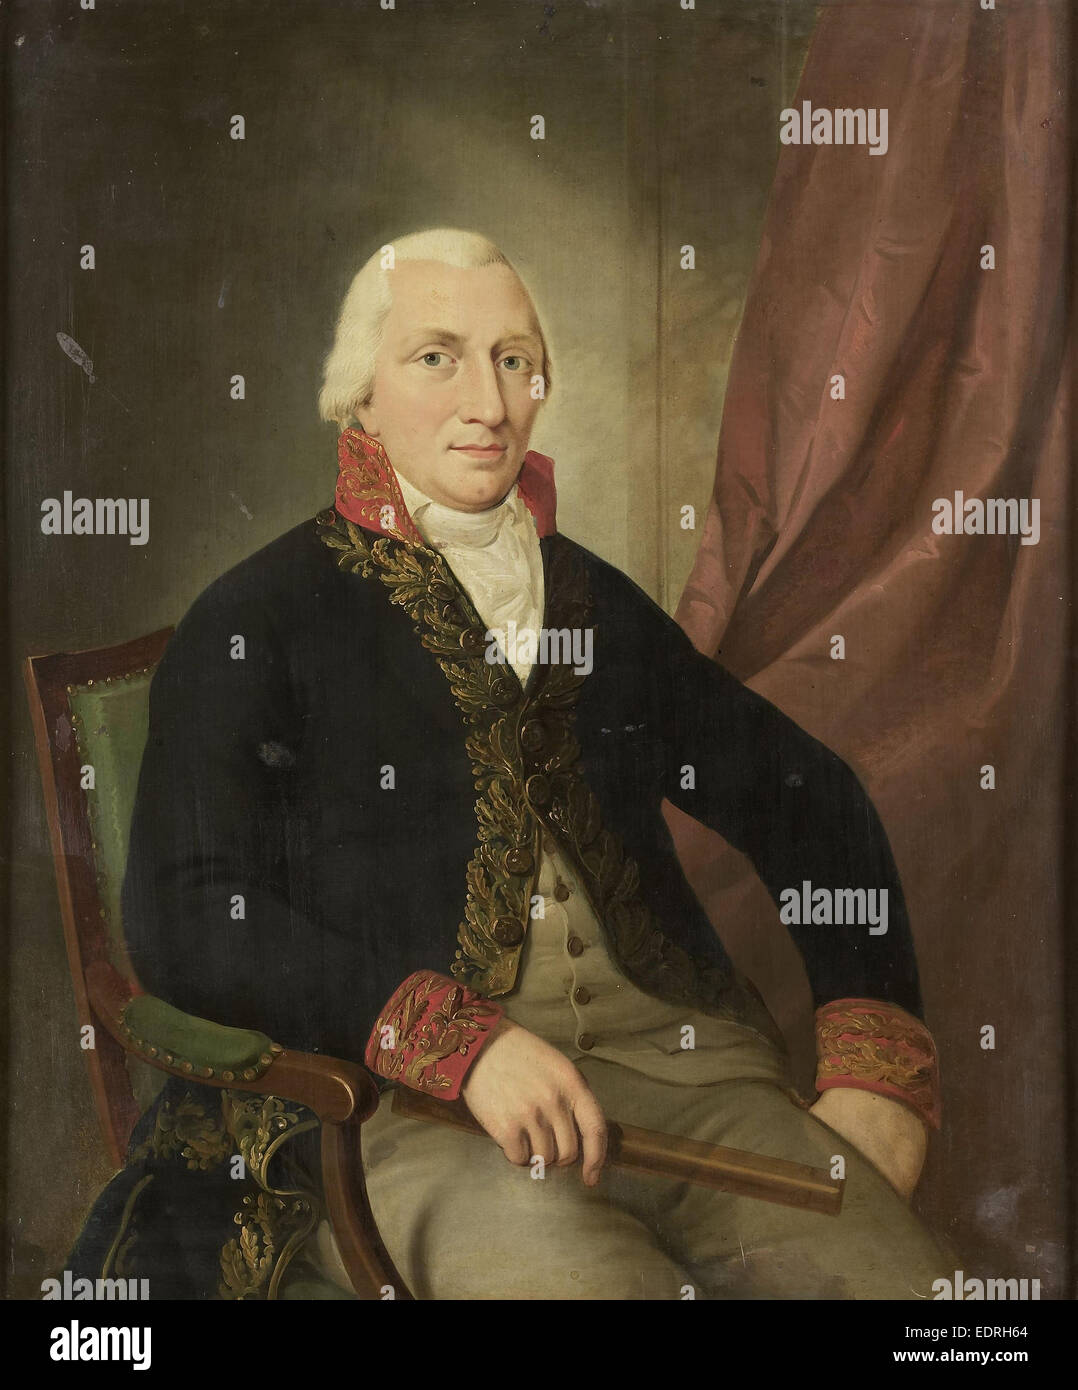 Porträt von Albertus Henricus Wiese, Generalgouverneur von Niederländisch-Ostindien zugeschrieben Adriaan de Lelie, 1805-1810 Stockfoto